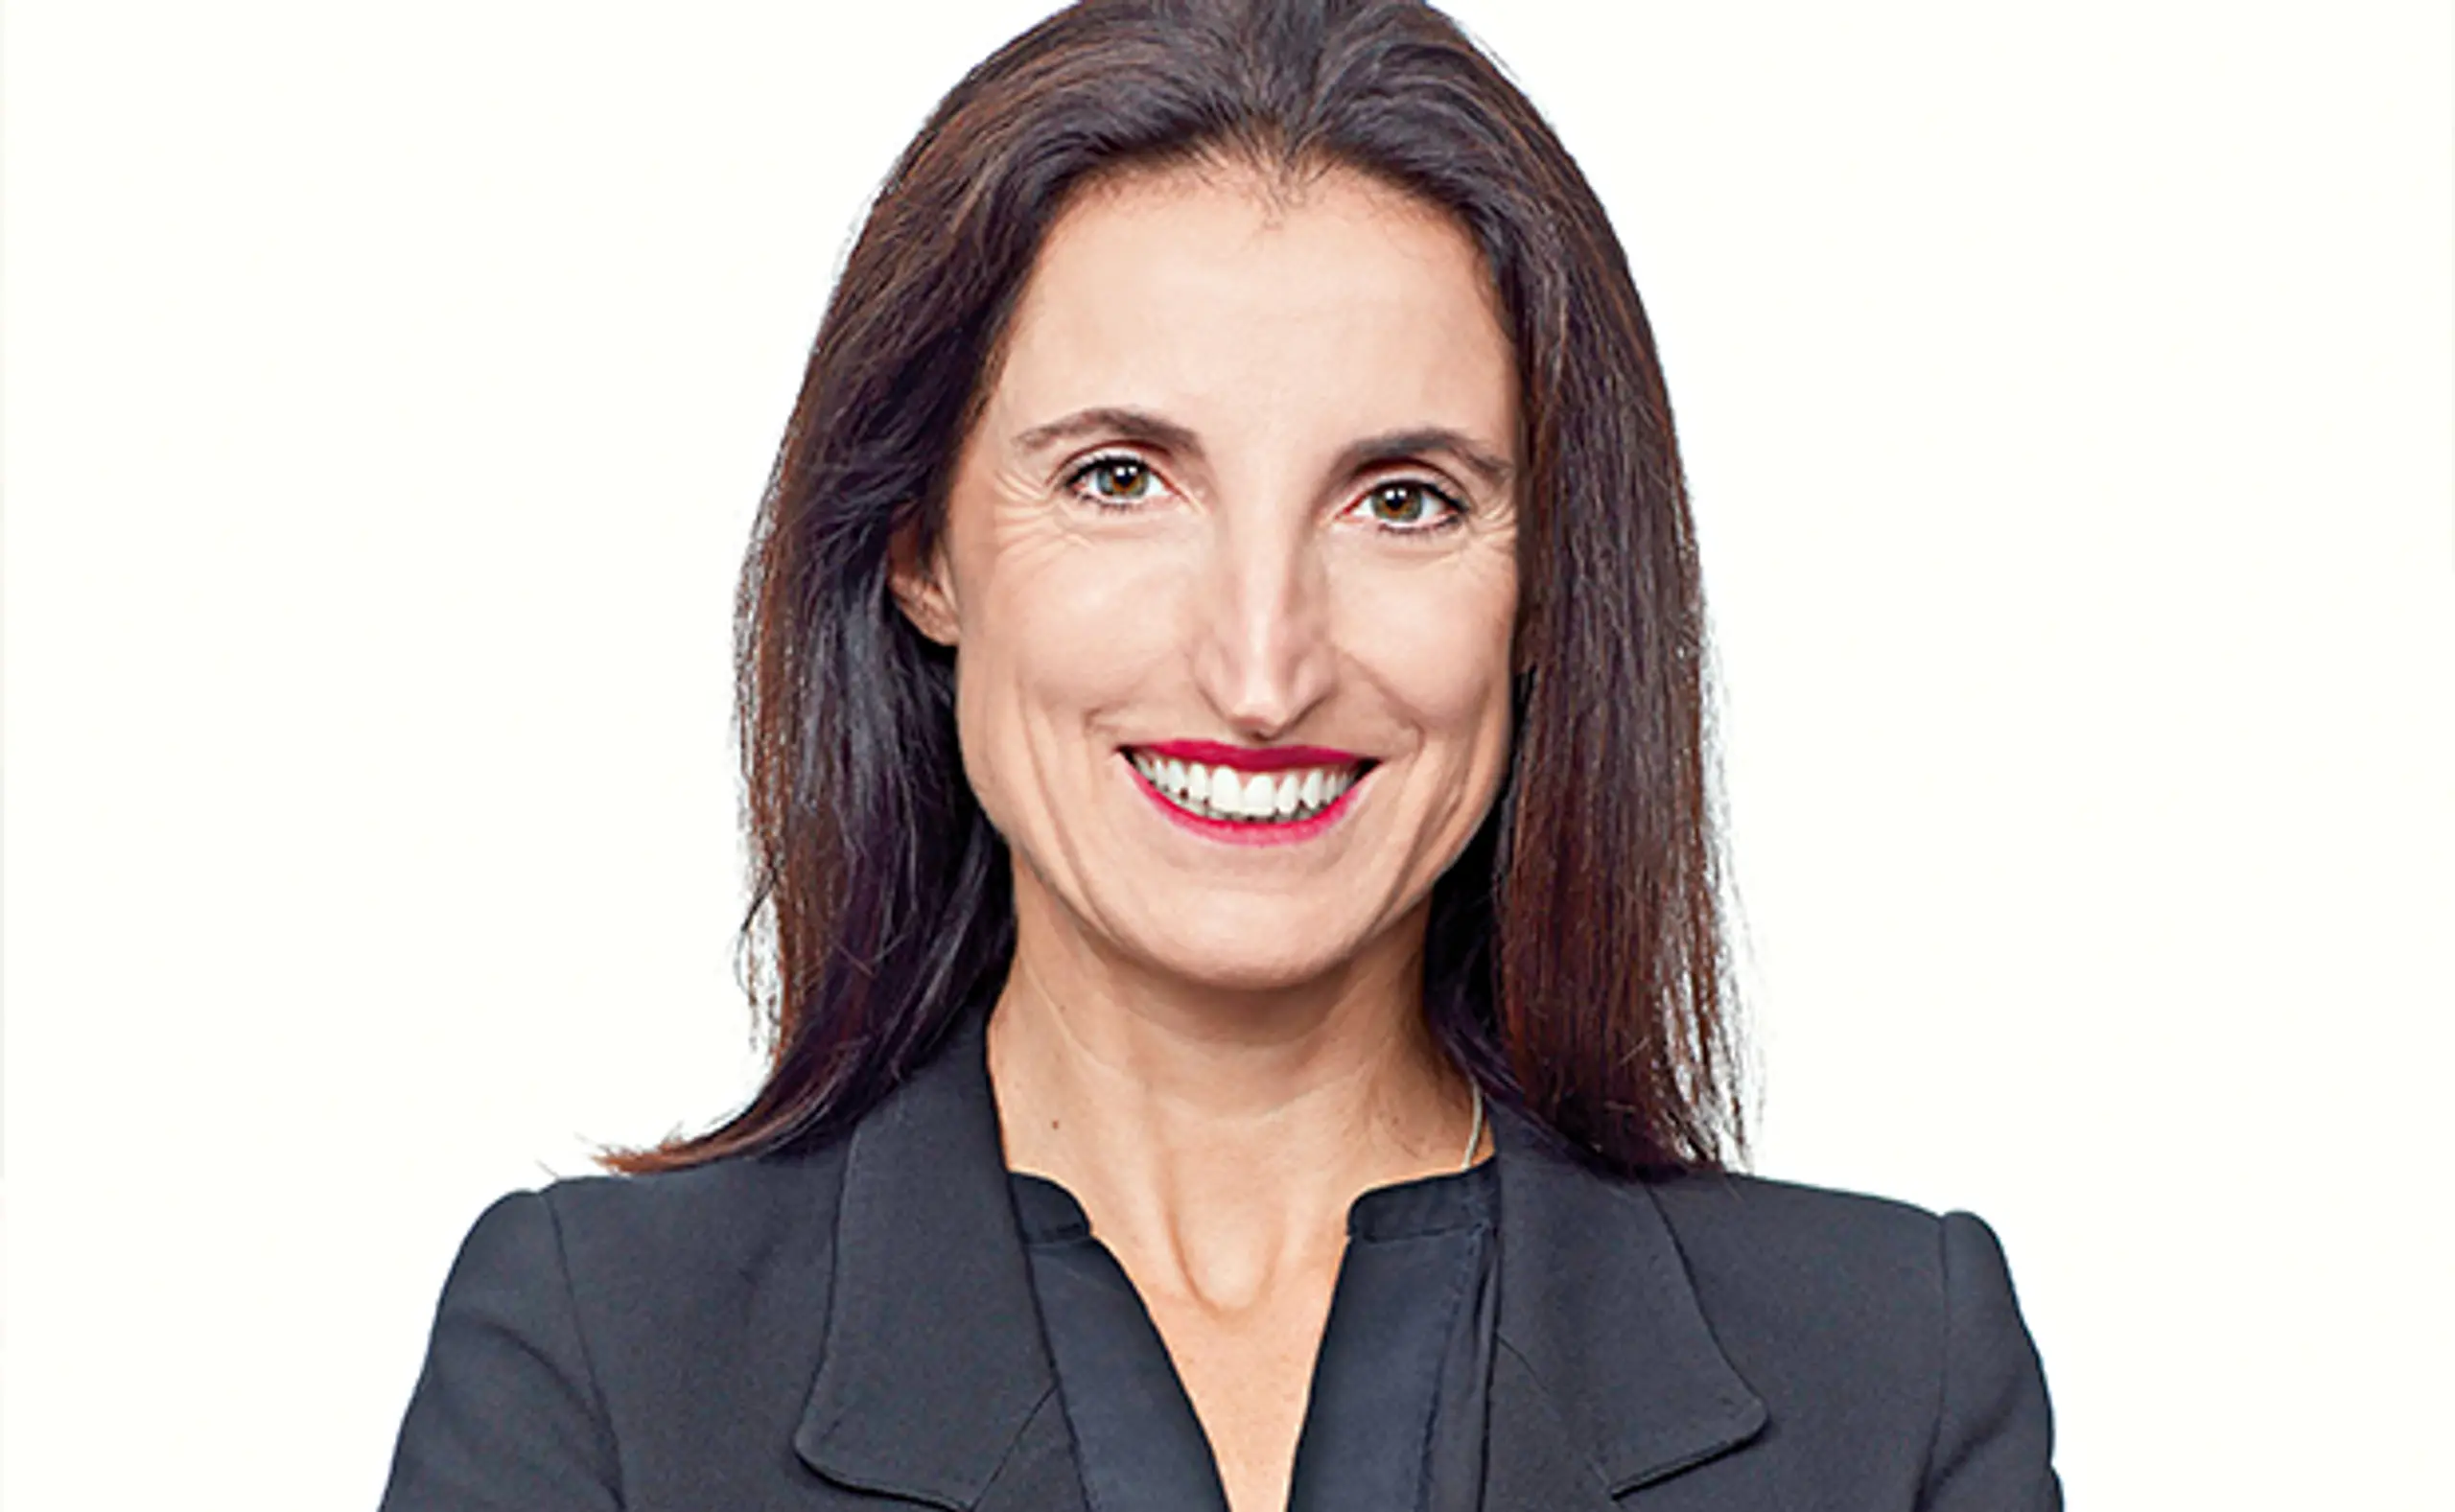 Agatha Kalandra&nbsp;ist seit 2016 Partnerin und Leiterin des Management-Consulting-Teams von PwC Österreich und Member of the Management Board. Sie verfügt über einen MBA in Controlling und Finance und mehr als 25 Jahre Berufserfahrung. Ihr Fokus liegt auf Finance-Transformation, HR-Transformation und Sustainability.